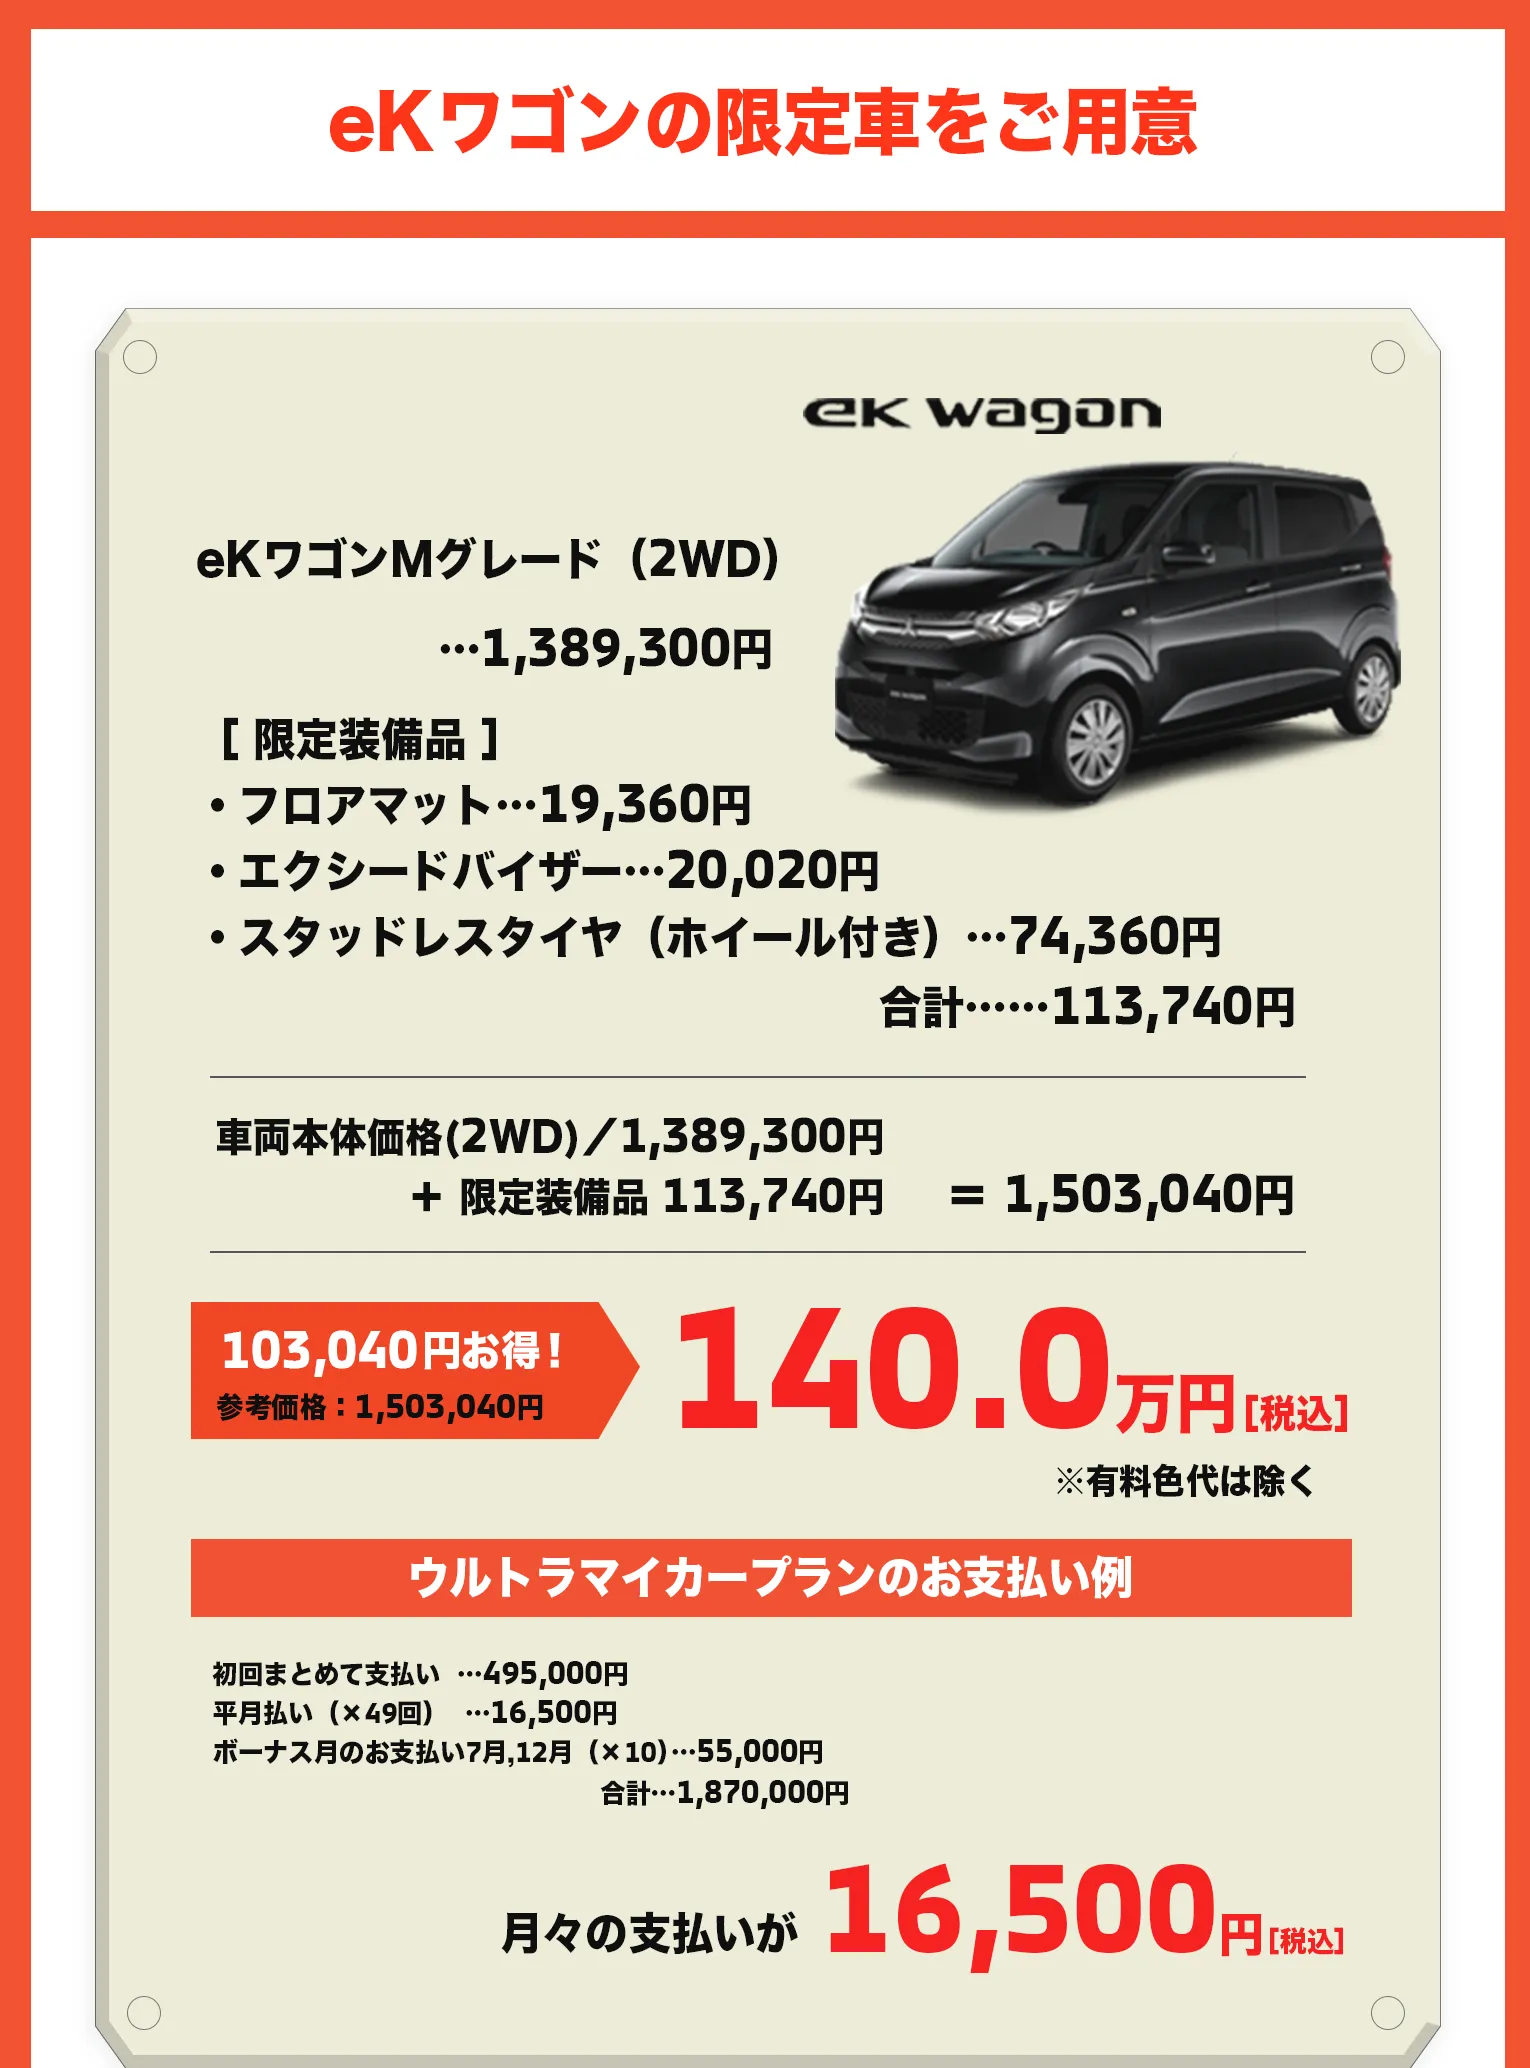 展示会中、eKワゴンMグレード（2WD）限定車(参考価格：1,503,040円)を140万でご提供。ウルトラマイカープラン適用可能